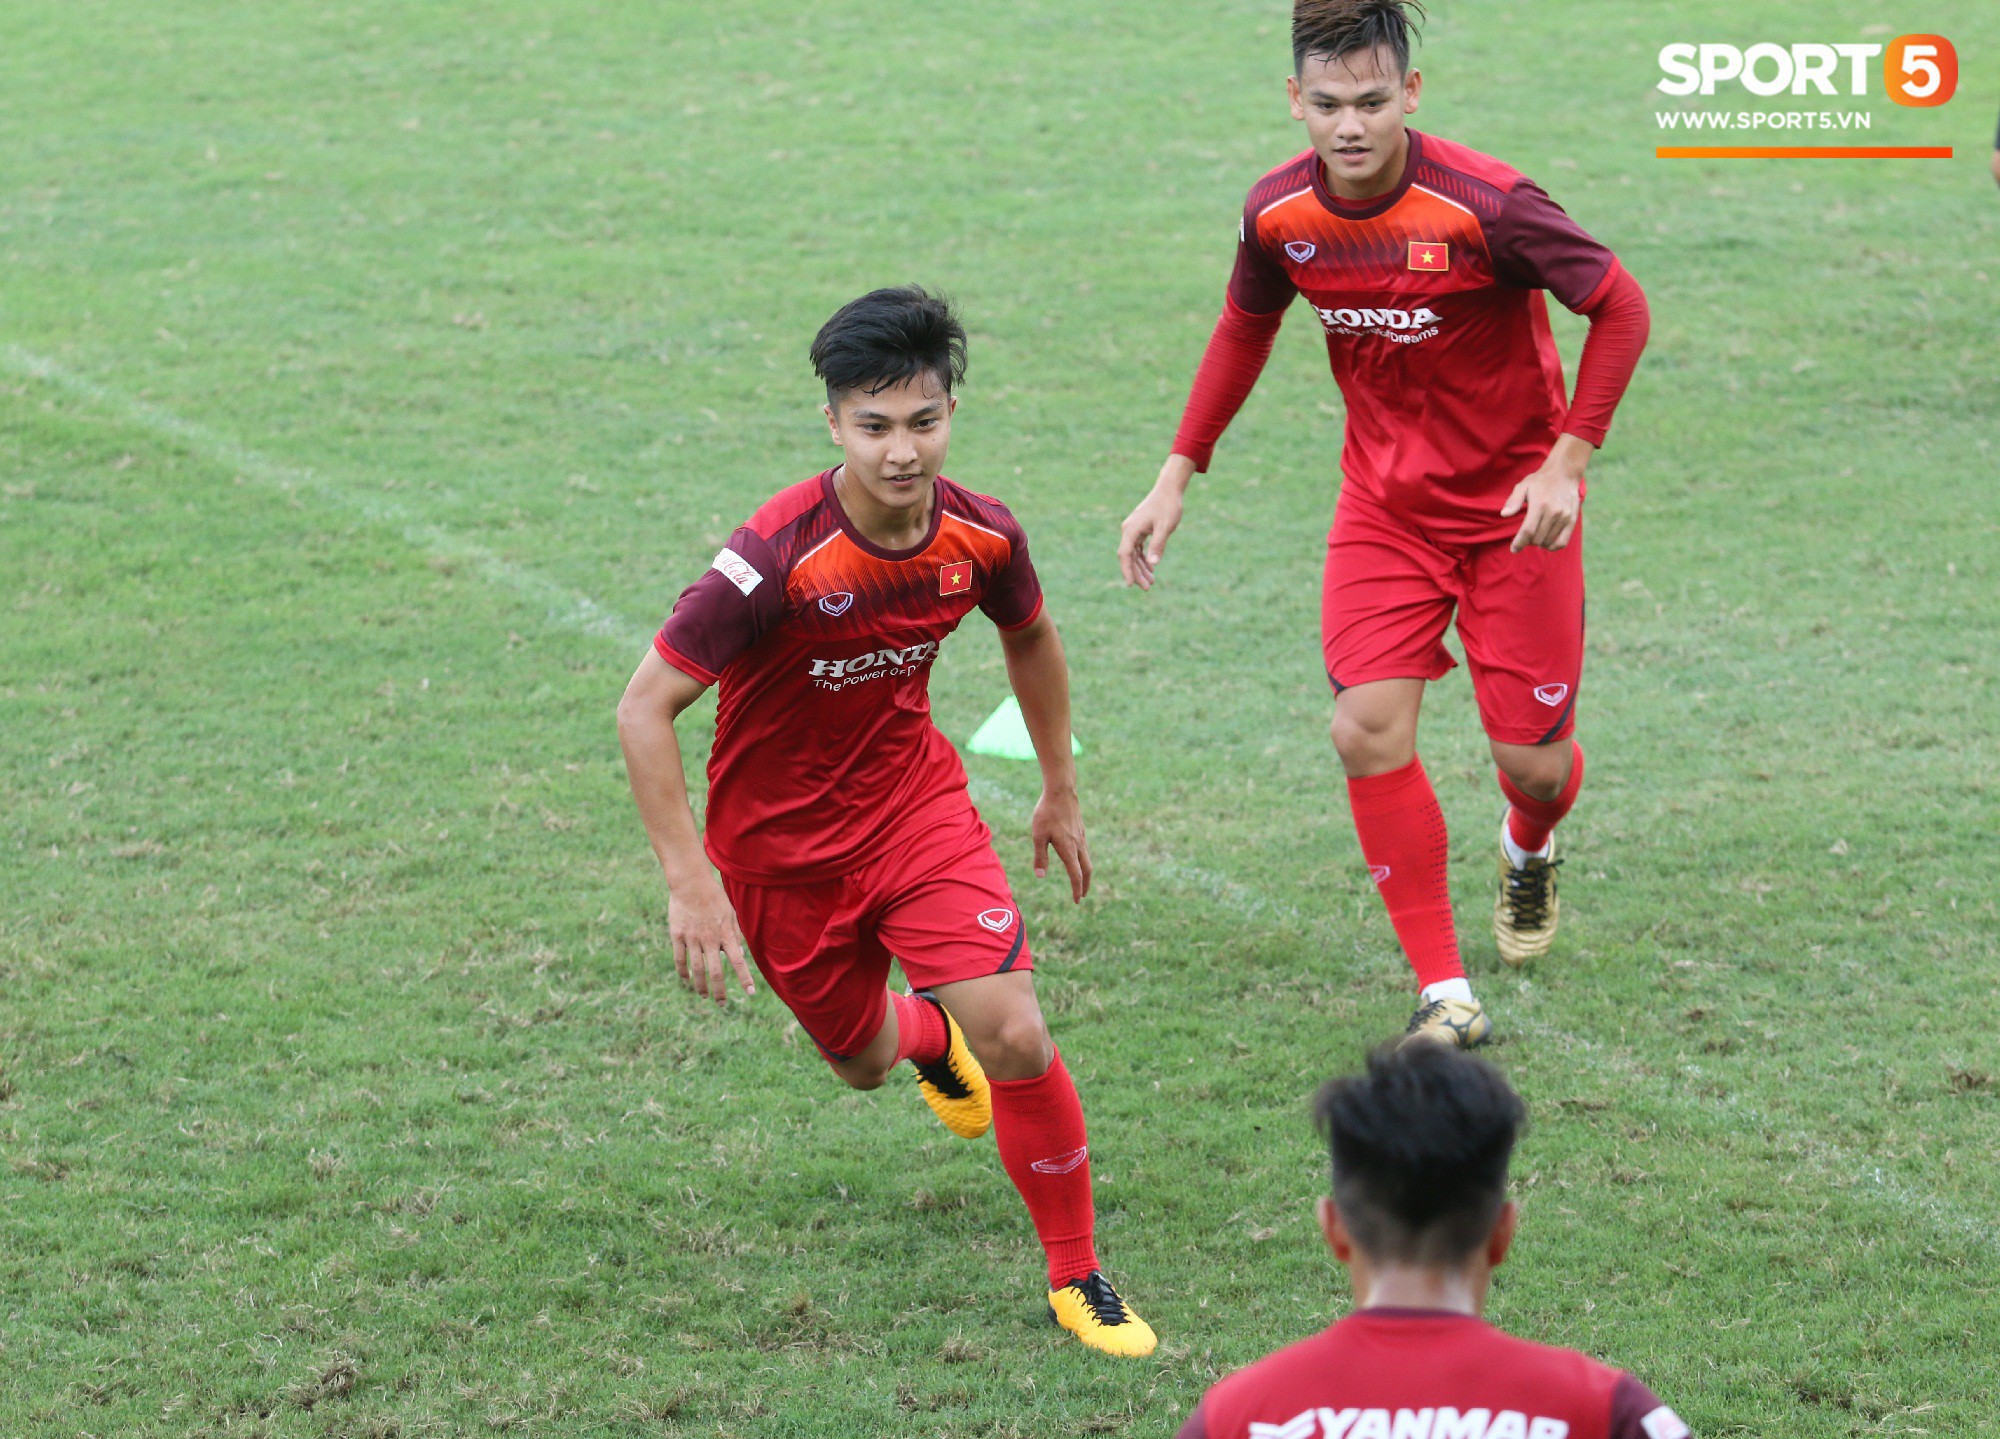 Hot boy Việt kiều chưa thể tập luyện, xót xa nhìn hàng loạt cầu thủ U23 Việt Nam chấn thương - Ảnh 1.